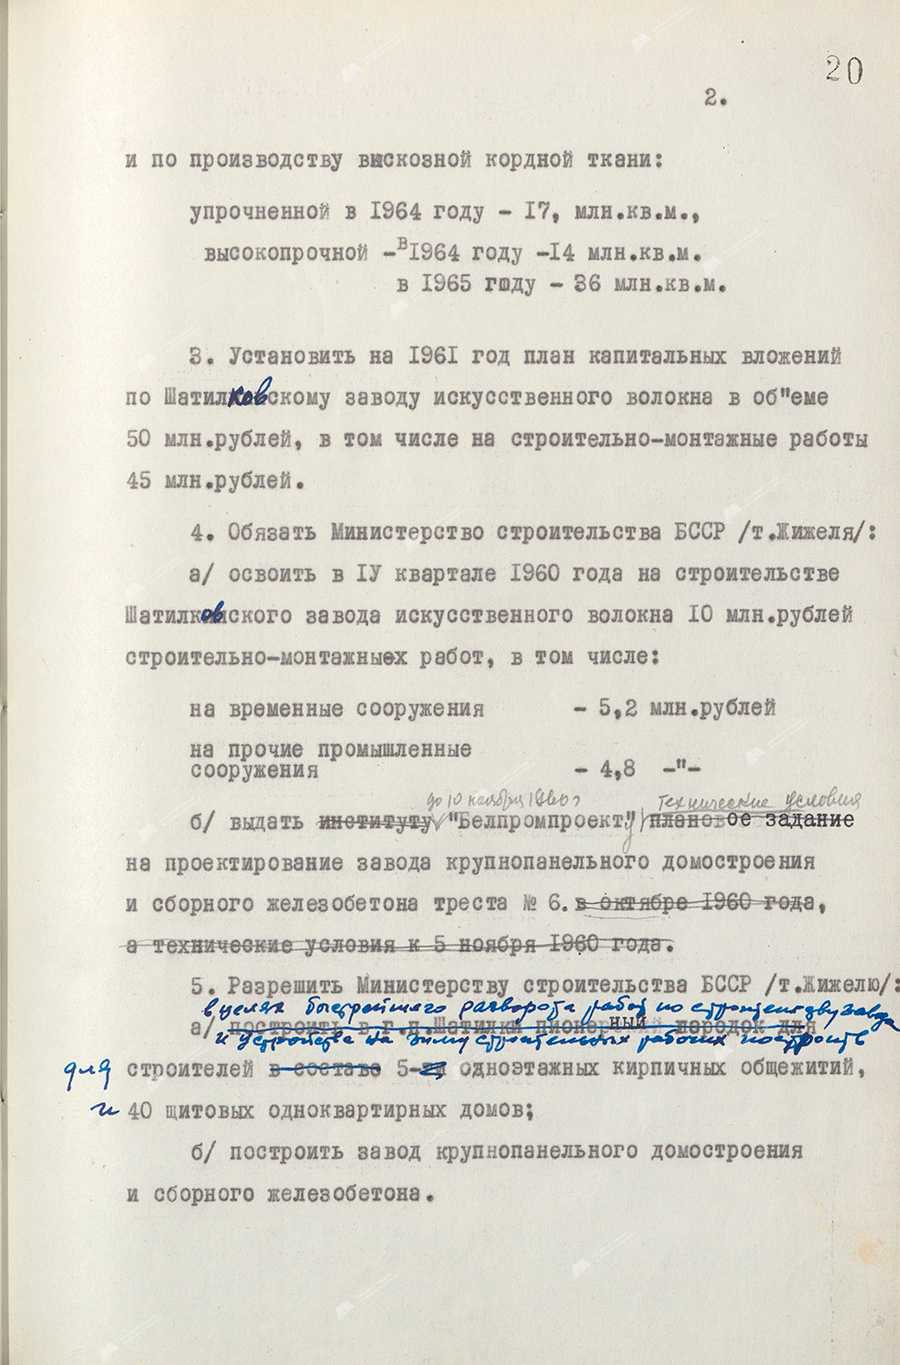 Beschluss Nr. 608 des Zentralkomitees der KP von Belarus und des Ministerrates der BSSR «Über den Bau einer Kunstfaseranlage in Shatilki, Region Gomel»-с. 1